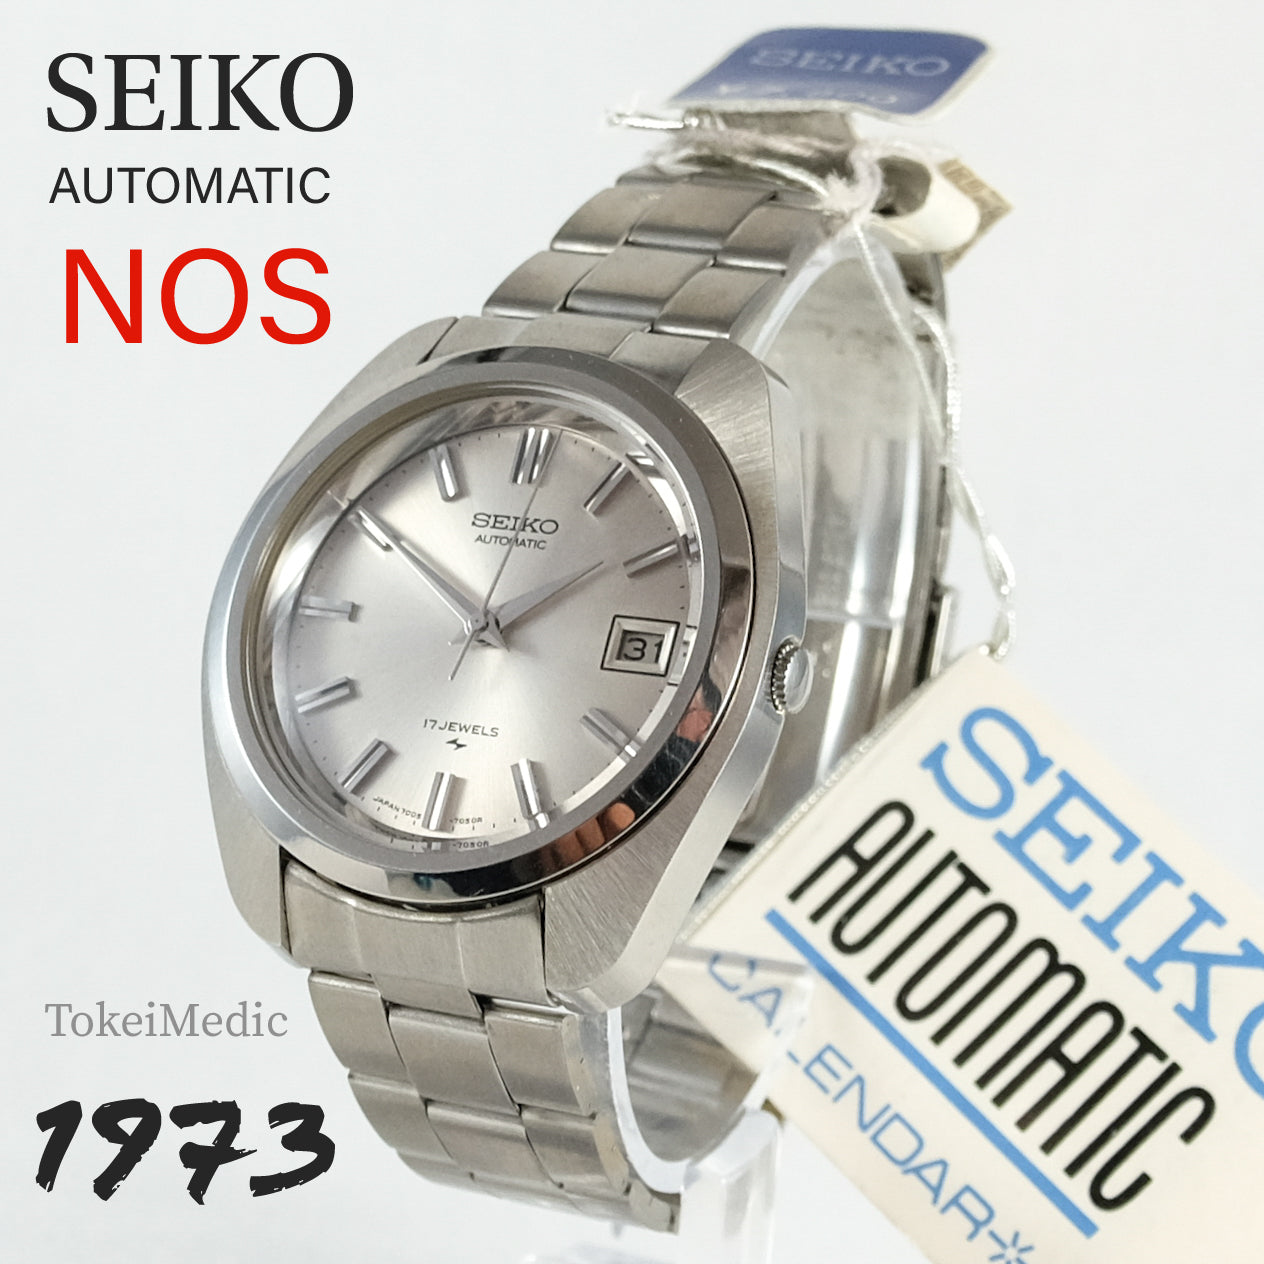 1973 NOS Seiko Automatic 7005-7031